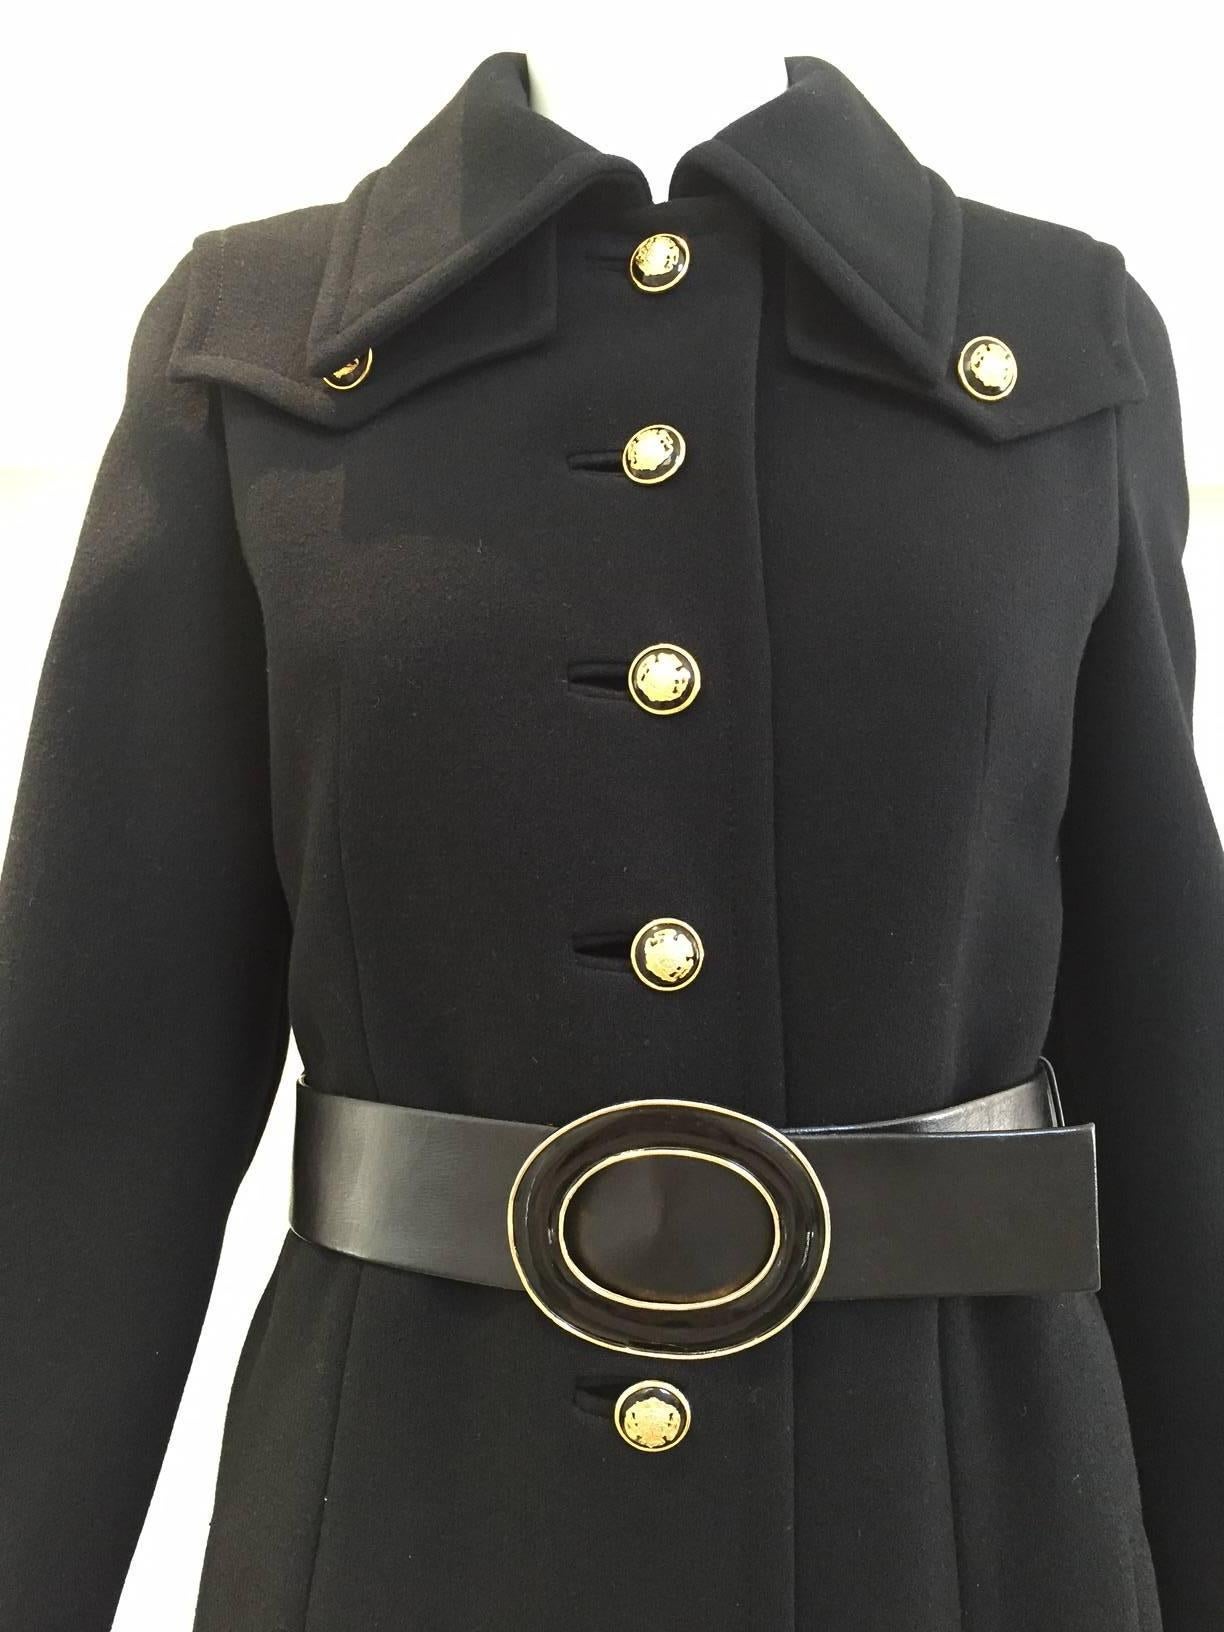 caban en crêpe de laine Bonwit Teller noir des années 1970 avec bouton d'écusson en métal noir et or. ( ceinture - poches latérales).  taille : 2 ou 4 max.
Poitrine : 34